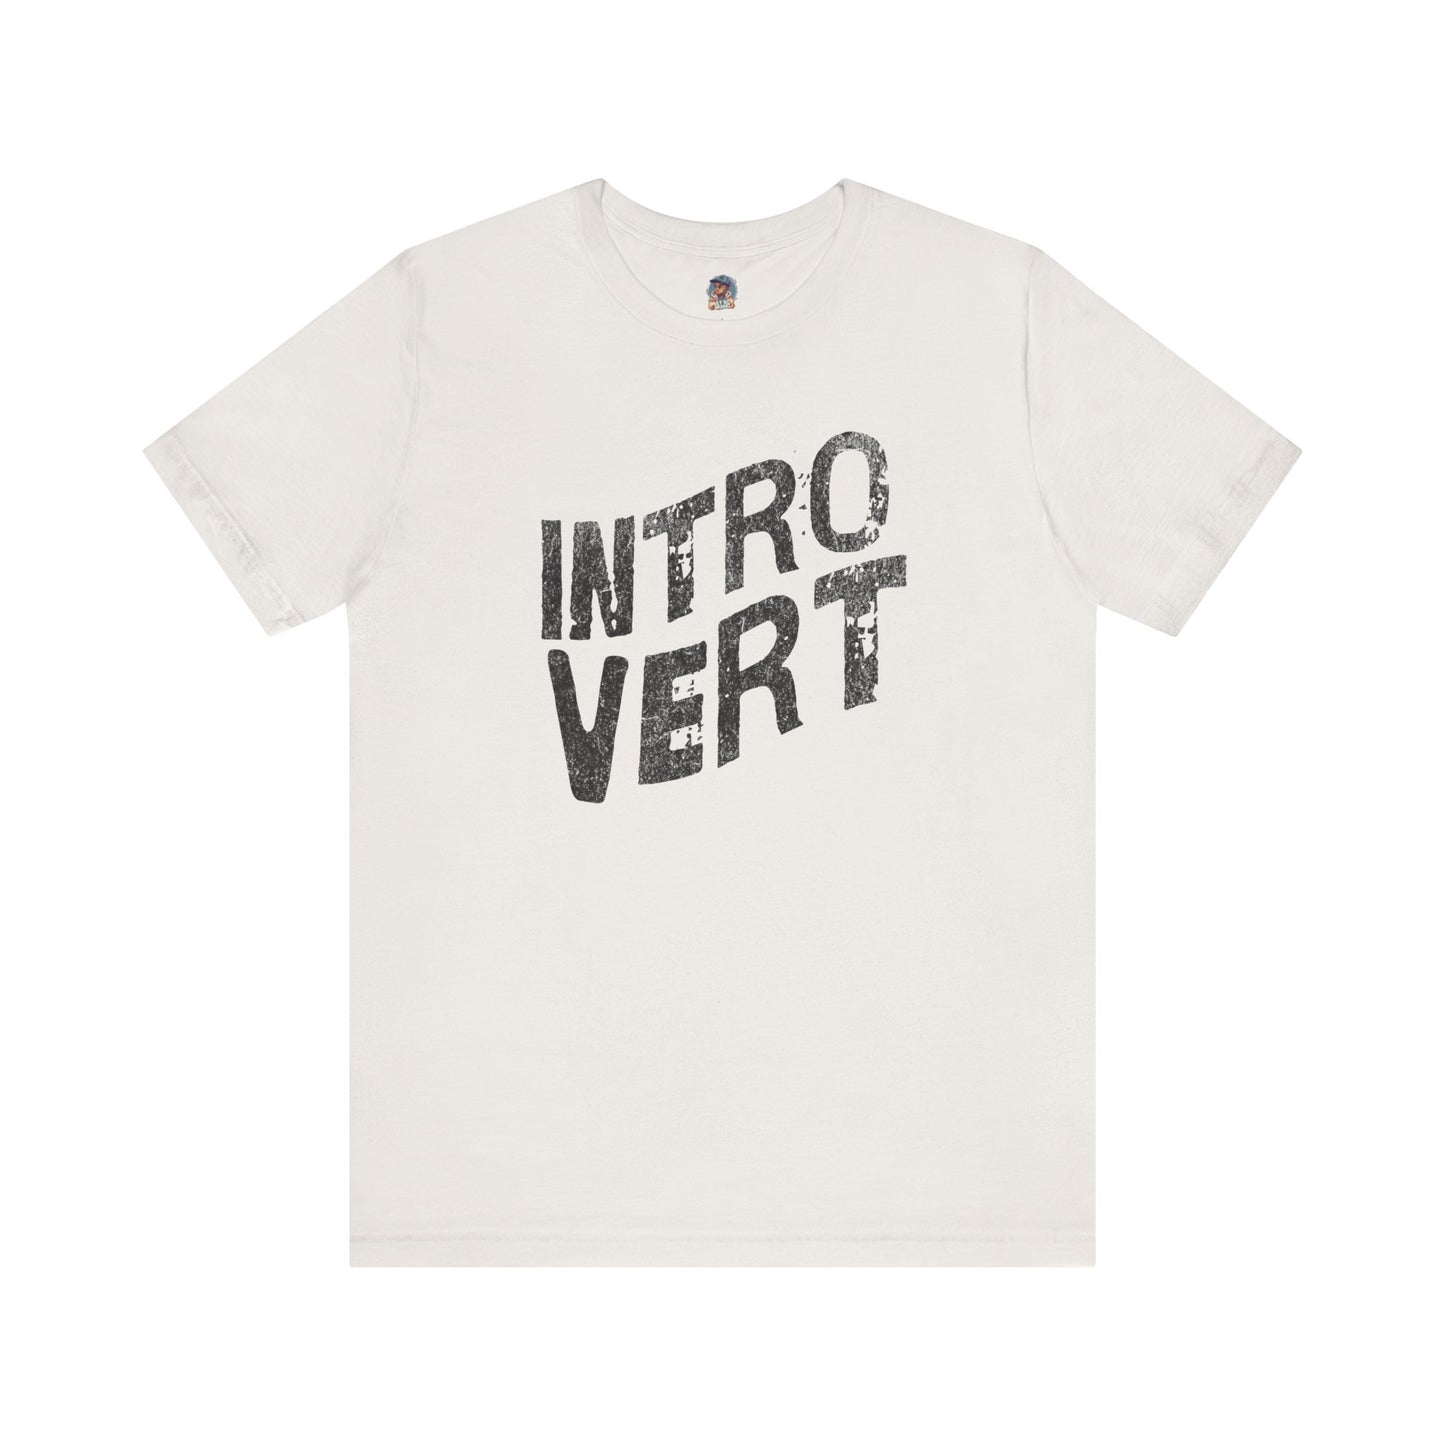 "Introvert T-shirt"